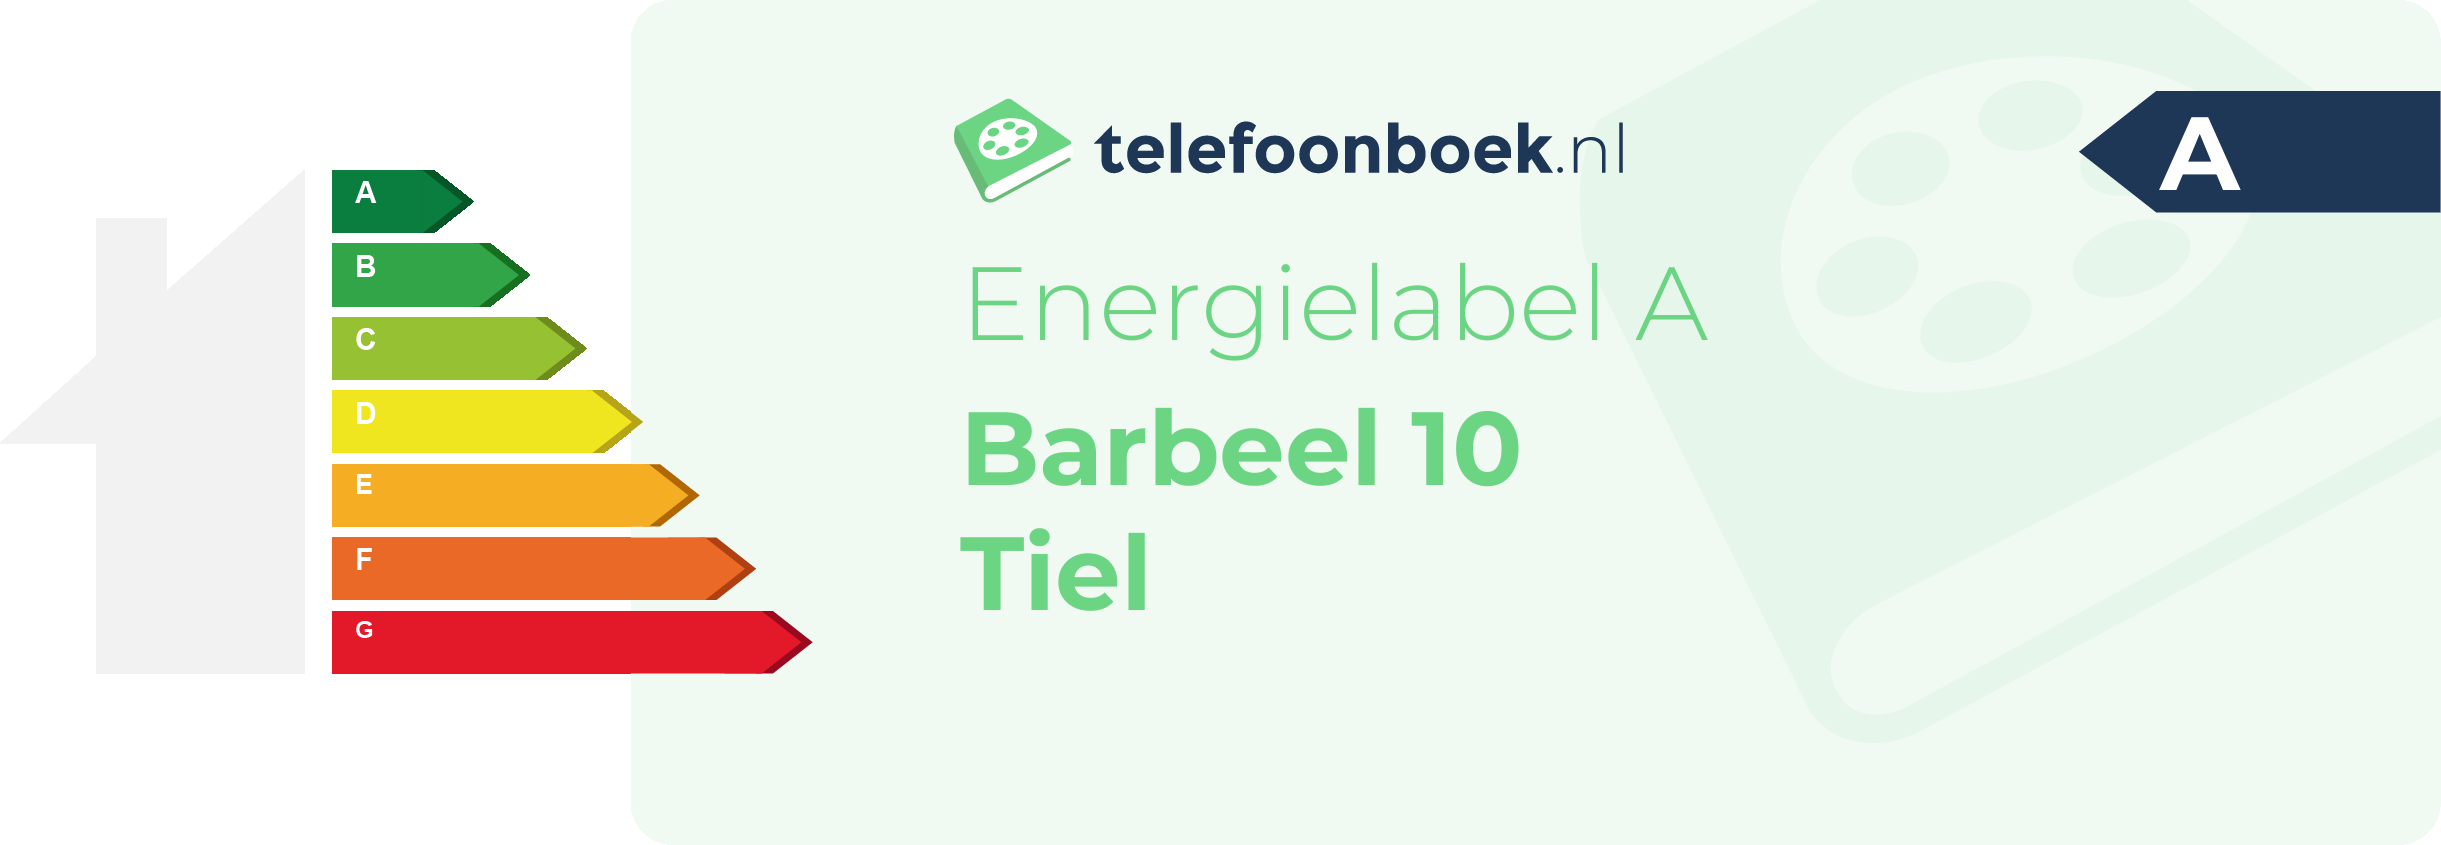 Energielabel Barbeel 10 Tiel